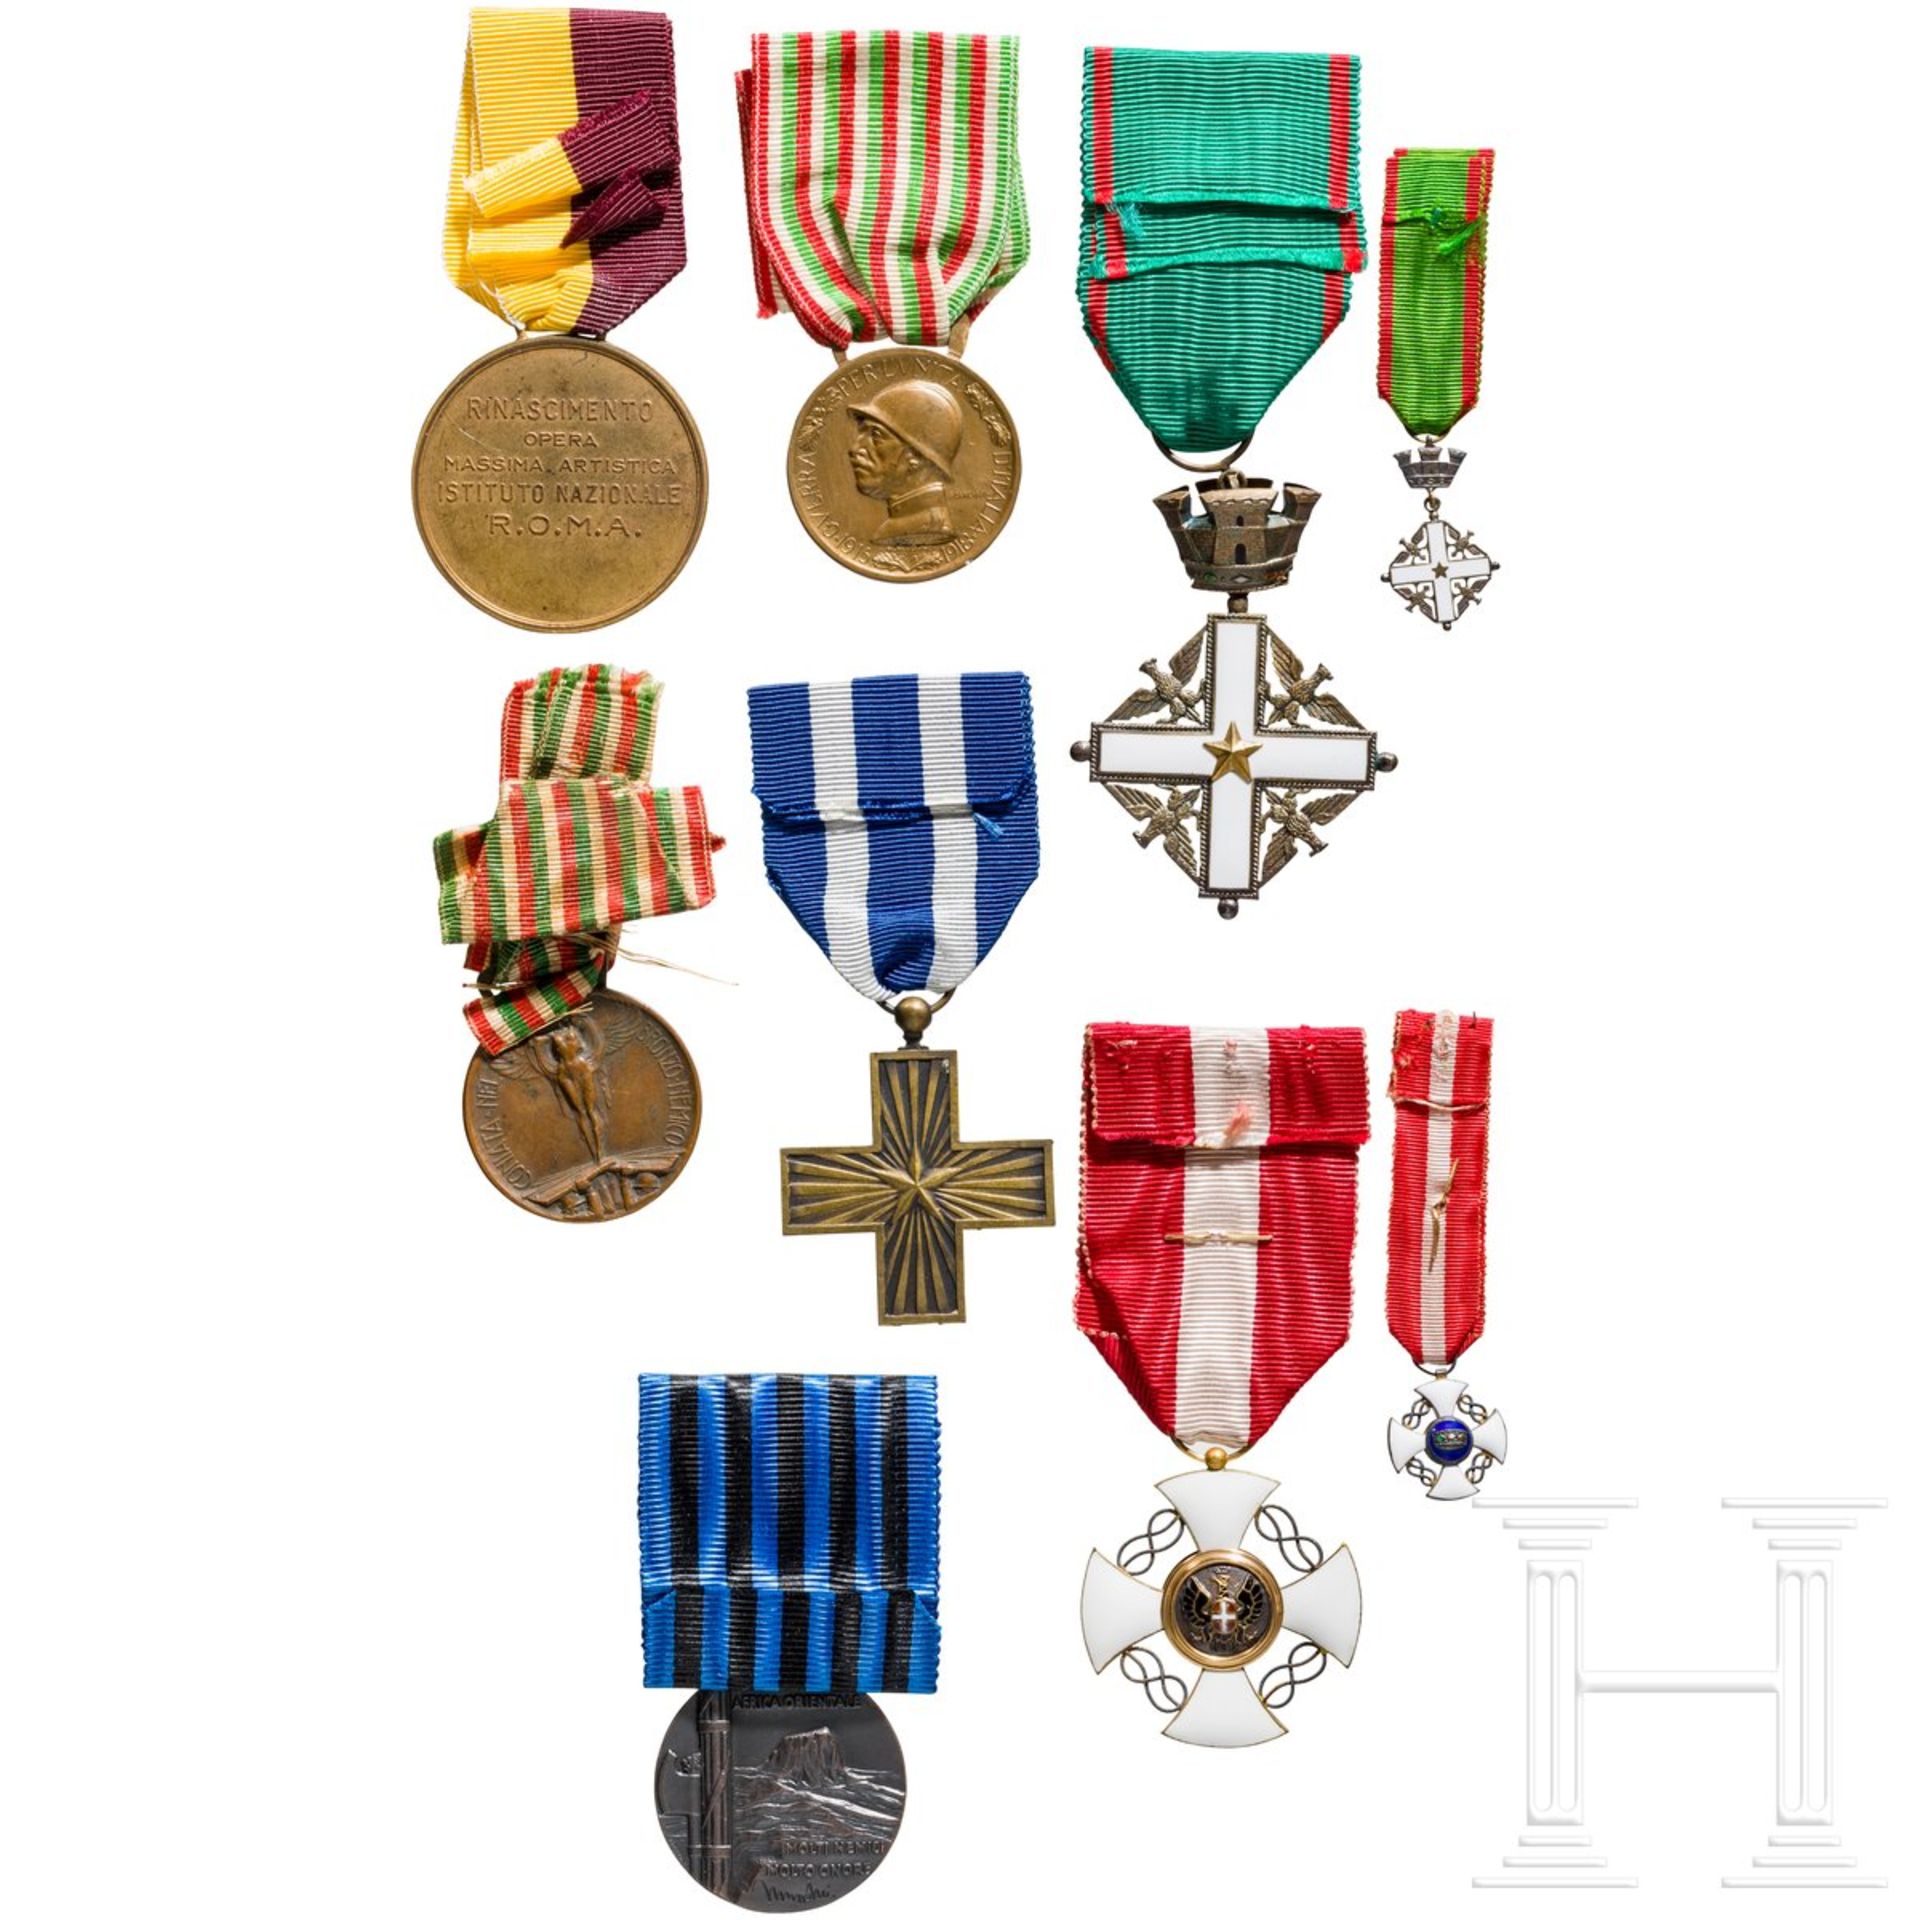 Orden der Krone von Italien - Kreuz der Ritter im Etui und weitere Auszeichnungen, Italien, 20. Jhdt - Image 2 of 2